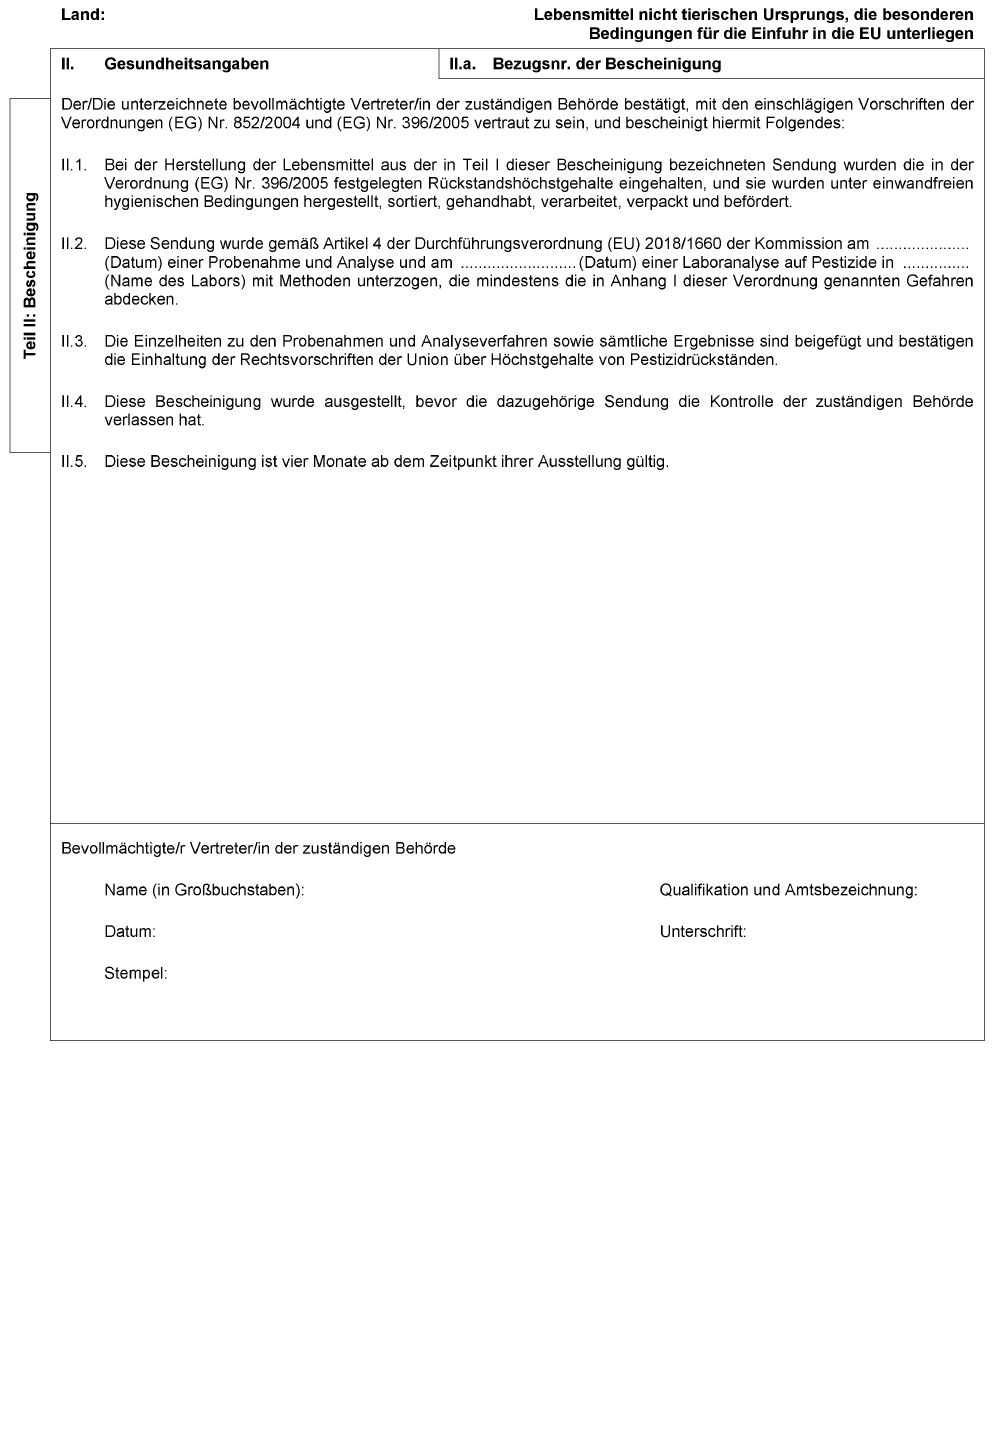 Muster des gemeinsamen Dokuments für die Einfuhr (GDE) - Seite 2